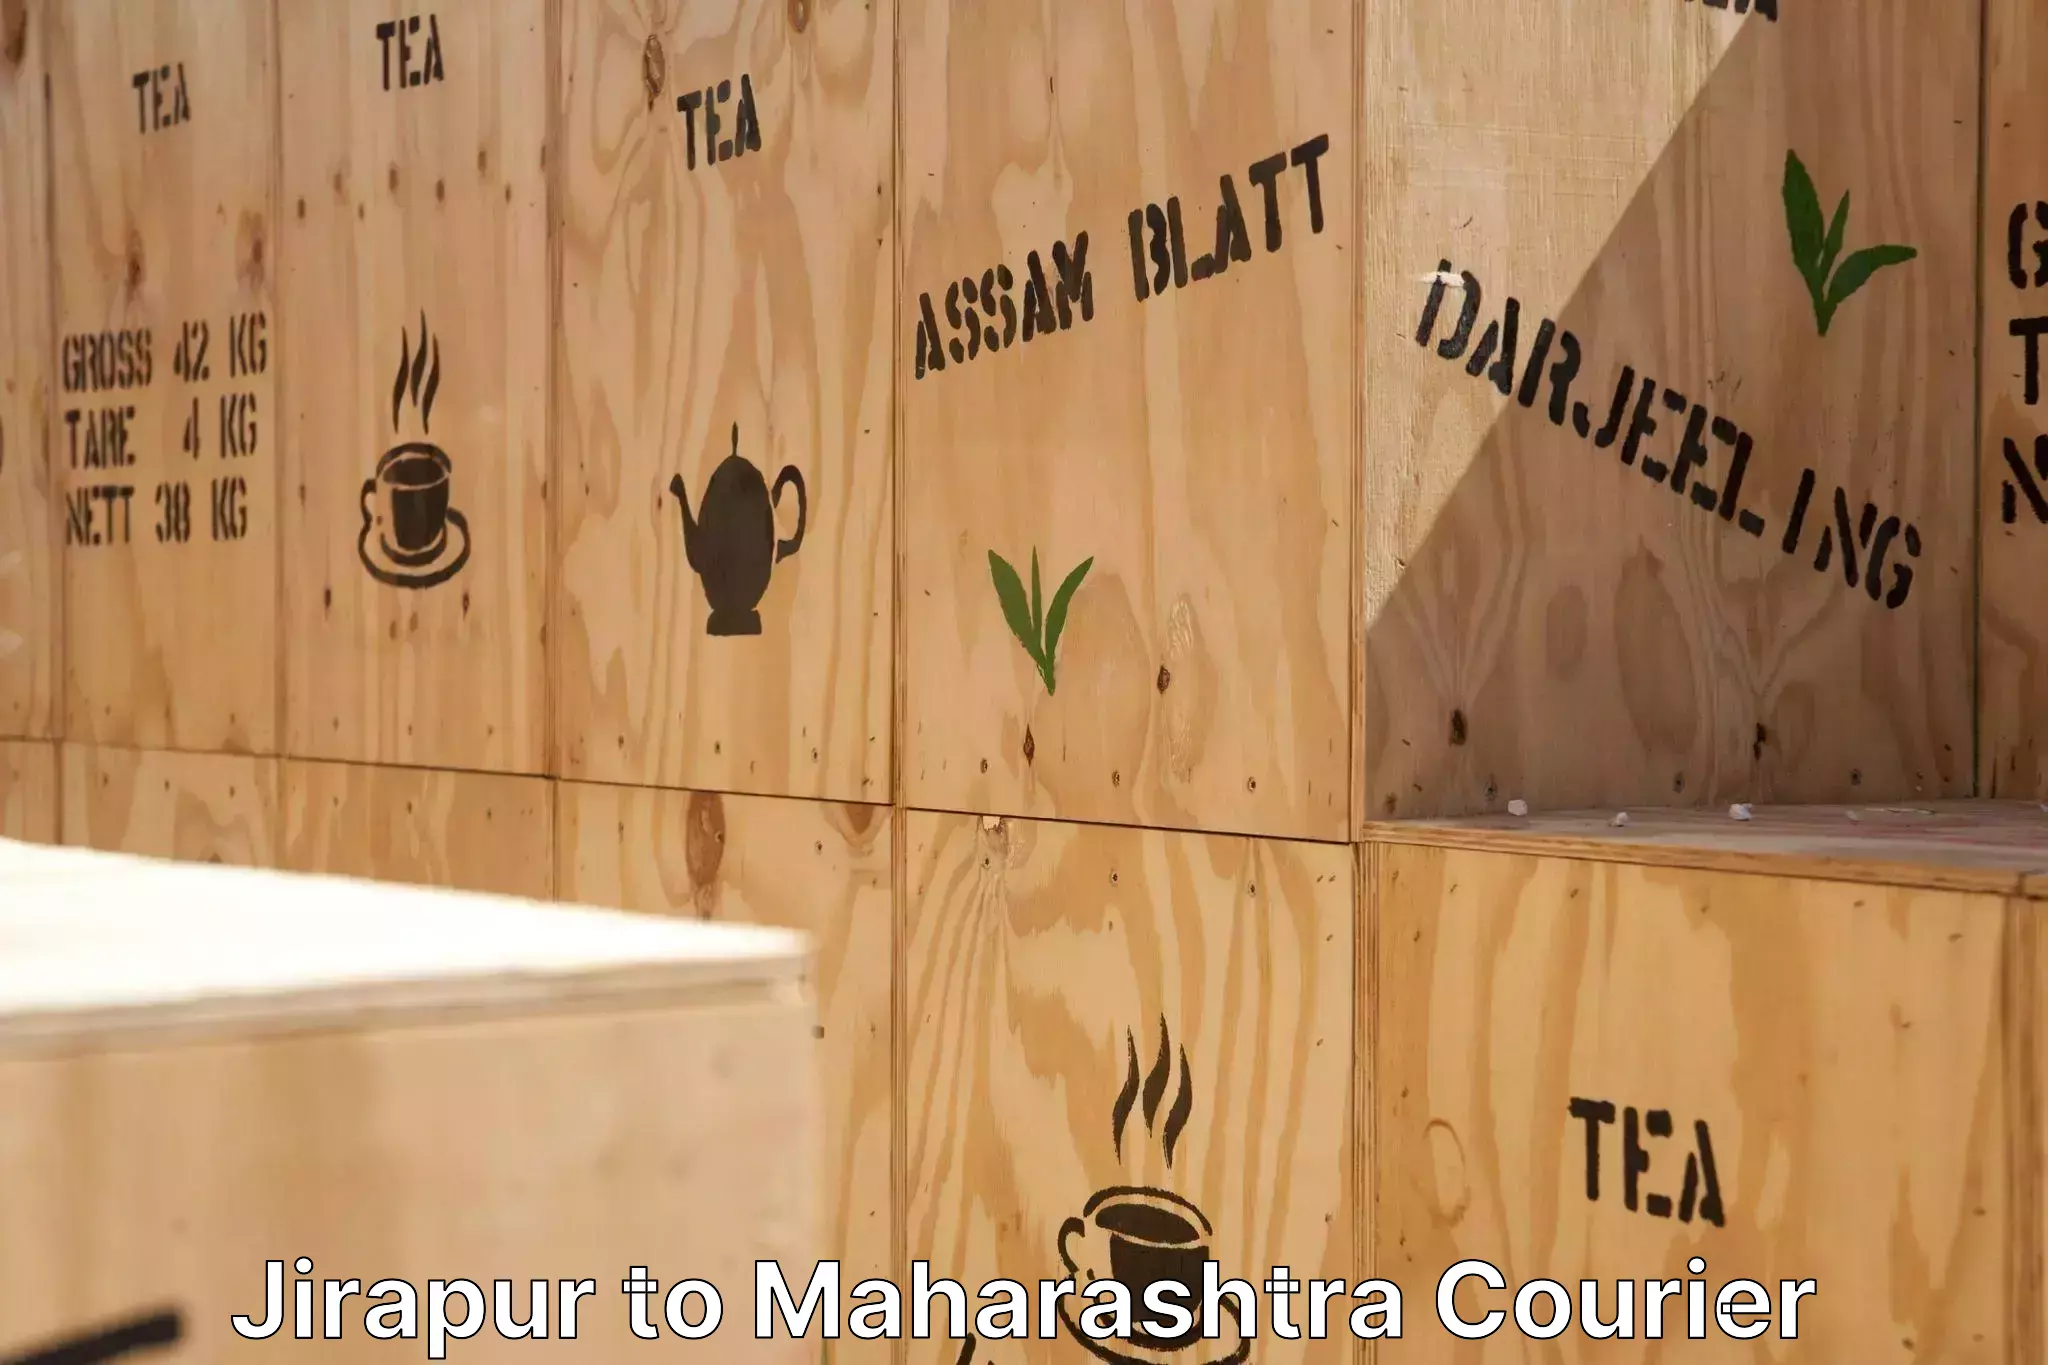 Efficient moving company Jirapur to Maharashtra